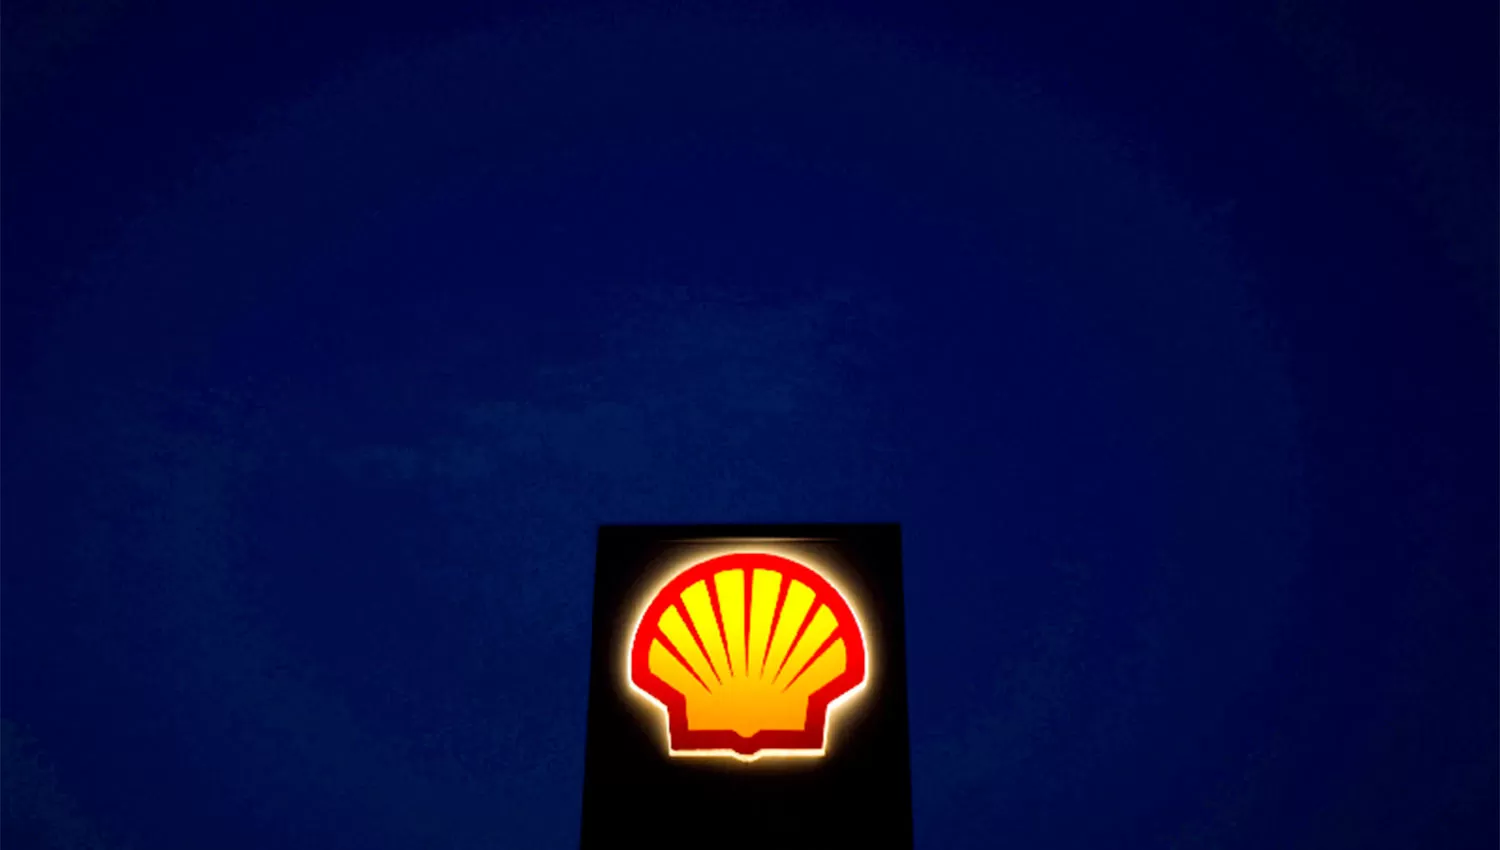 RETIRADA. Shell se sumará a las empresas europeas que dejarán de operar con petróleo ruso.